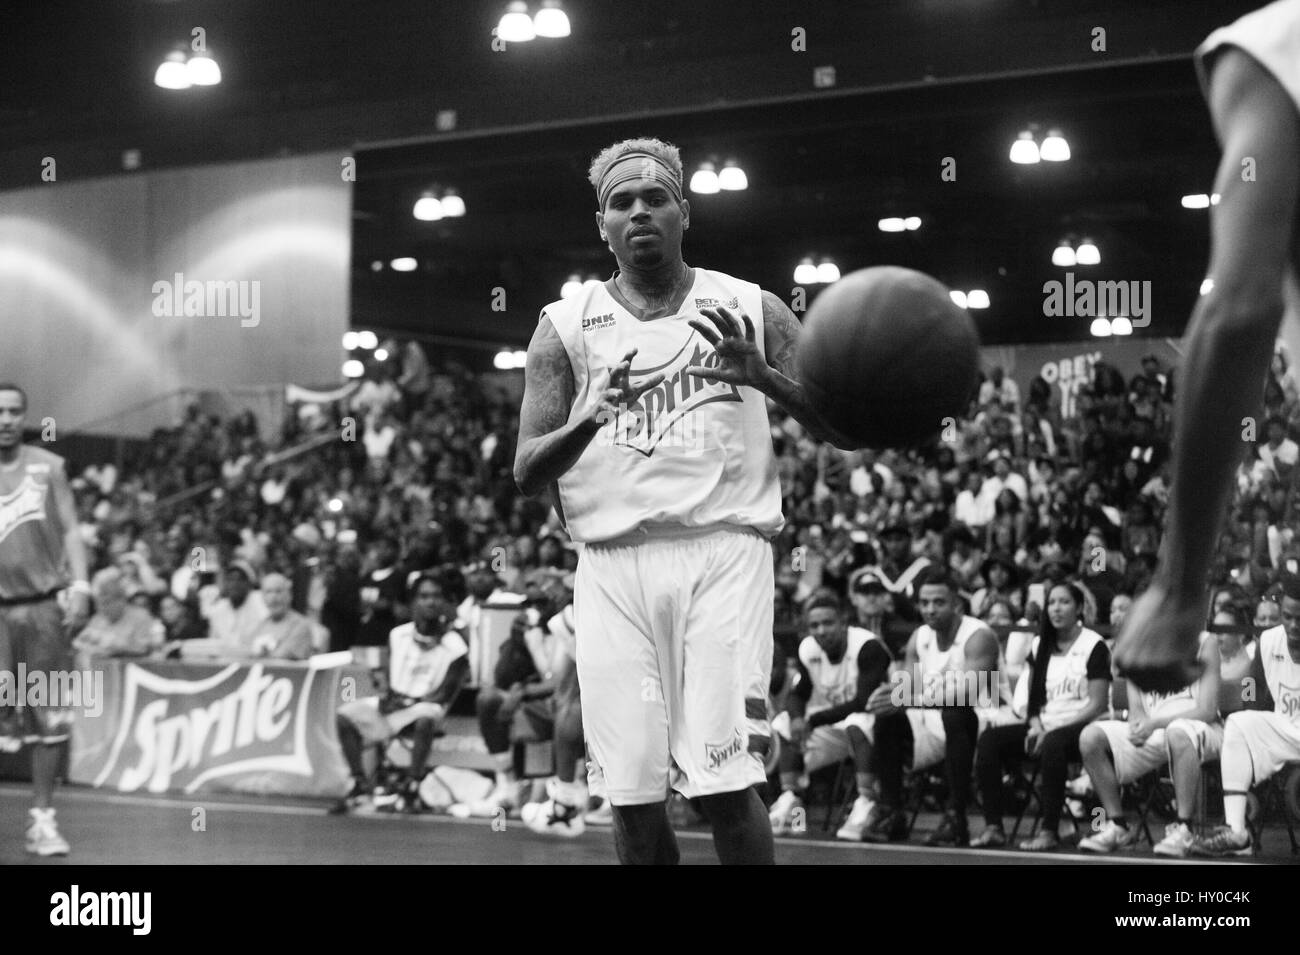 Chris Brown jouant dans l'expérience PARI Sprite Celebrity match de basket-ball au Los Angeles Convention Center le 27 juin 2015 à Los Angeles, Californie. Altérées (noir et blanc) Banque D'Images